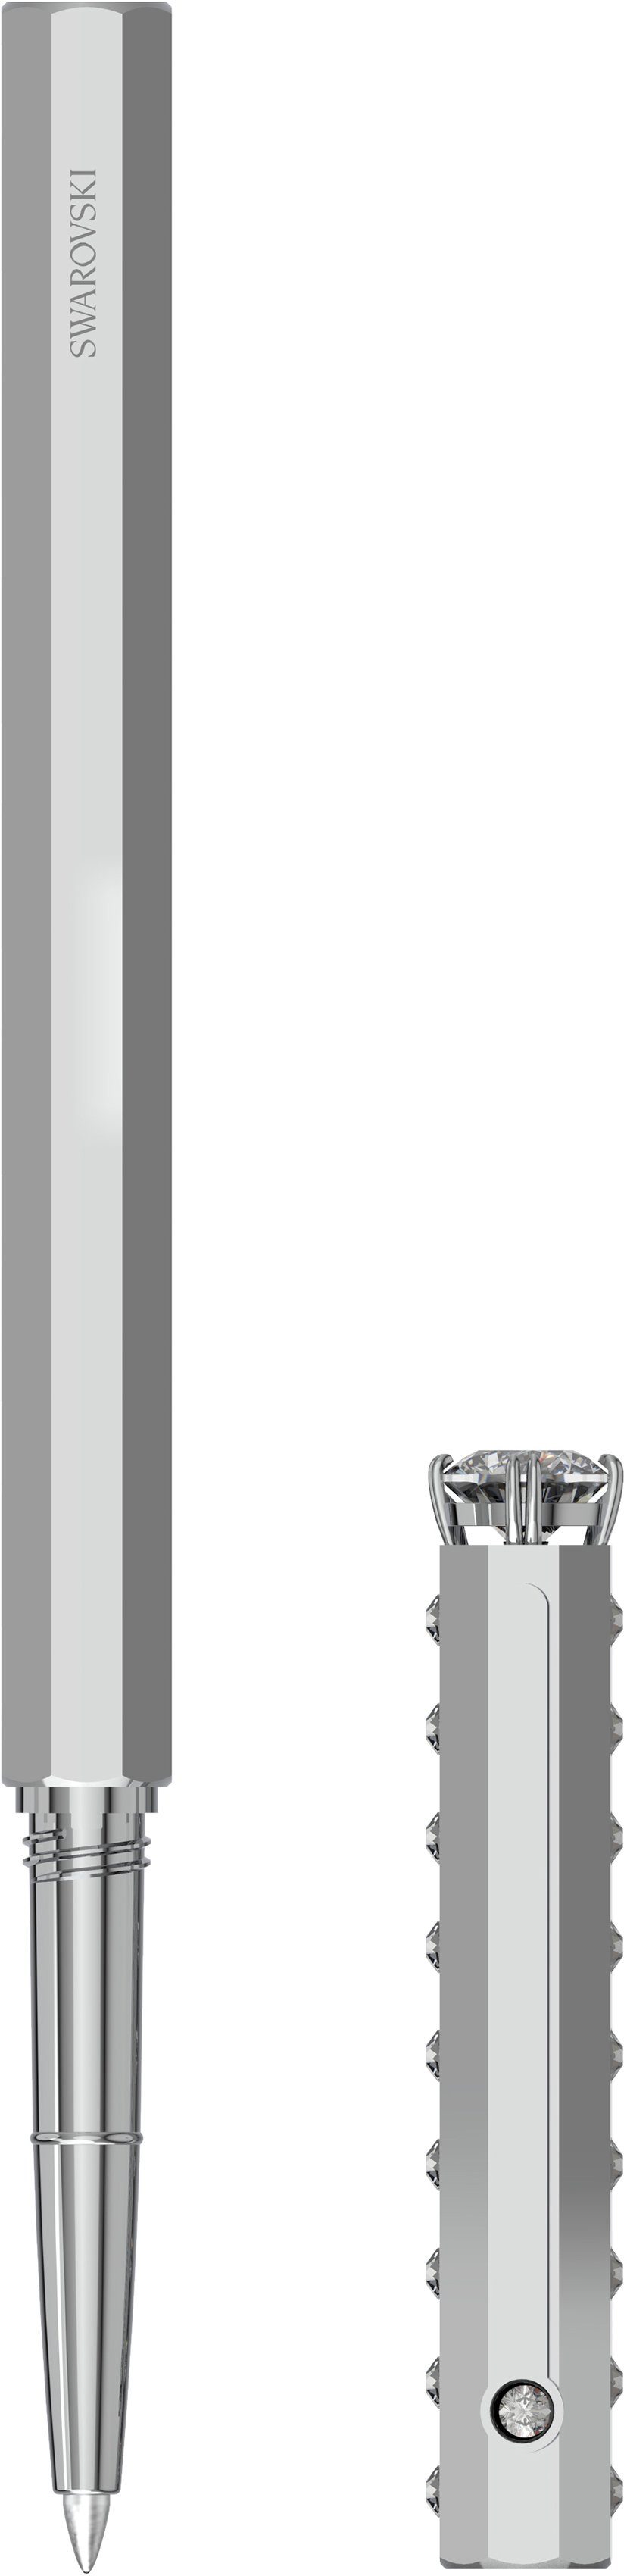 Klassisch, mit 5634417, Swarovski® 5631210, 5627168, Swarovski Kristallen Kugelschreiber metallfarben-kristallweiß 5631209,